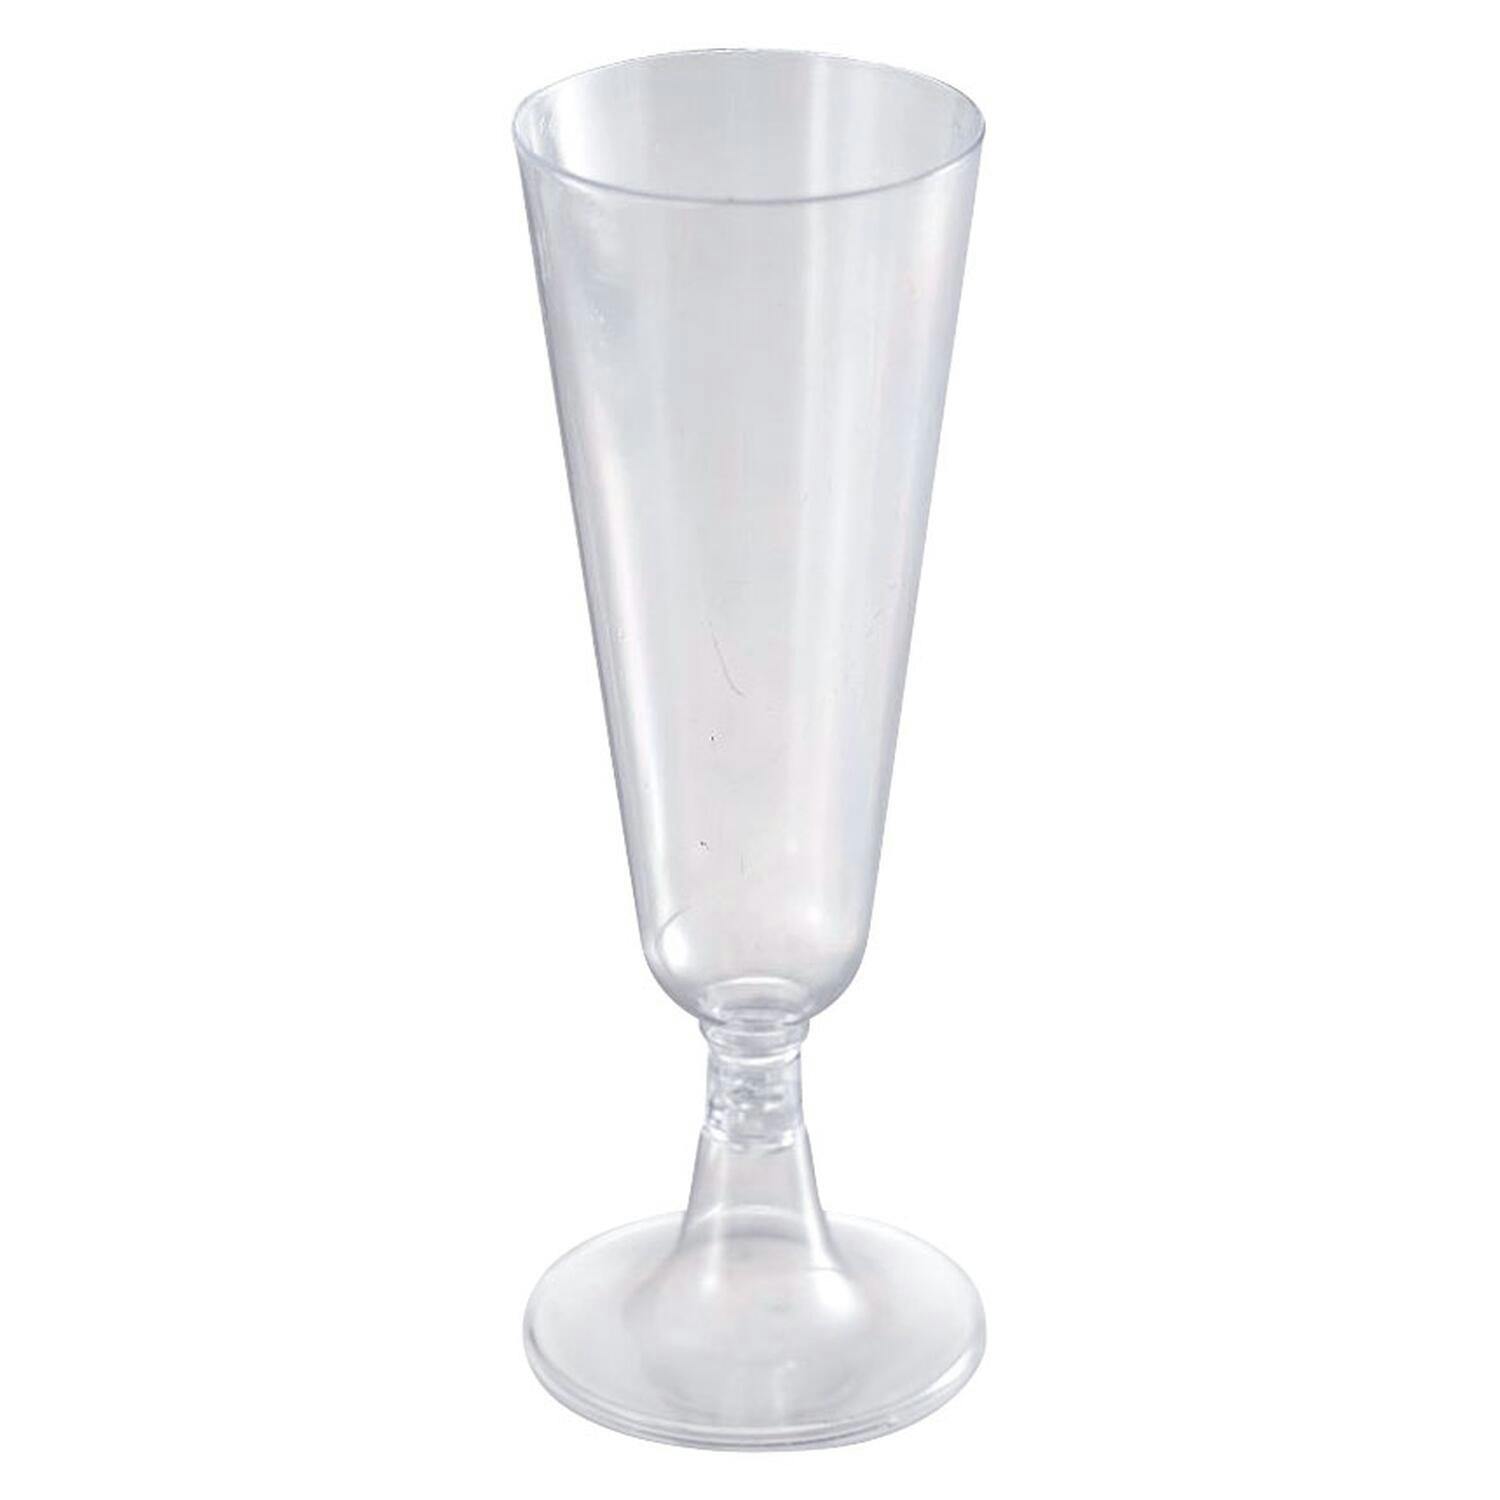 Einweg Glas Sektgläser Champagnergläser Sekt Wein Plastikglas Trinkbecher 